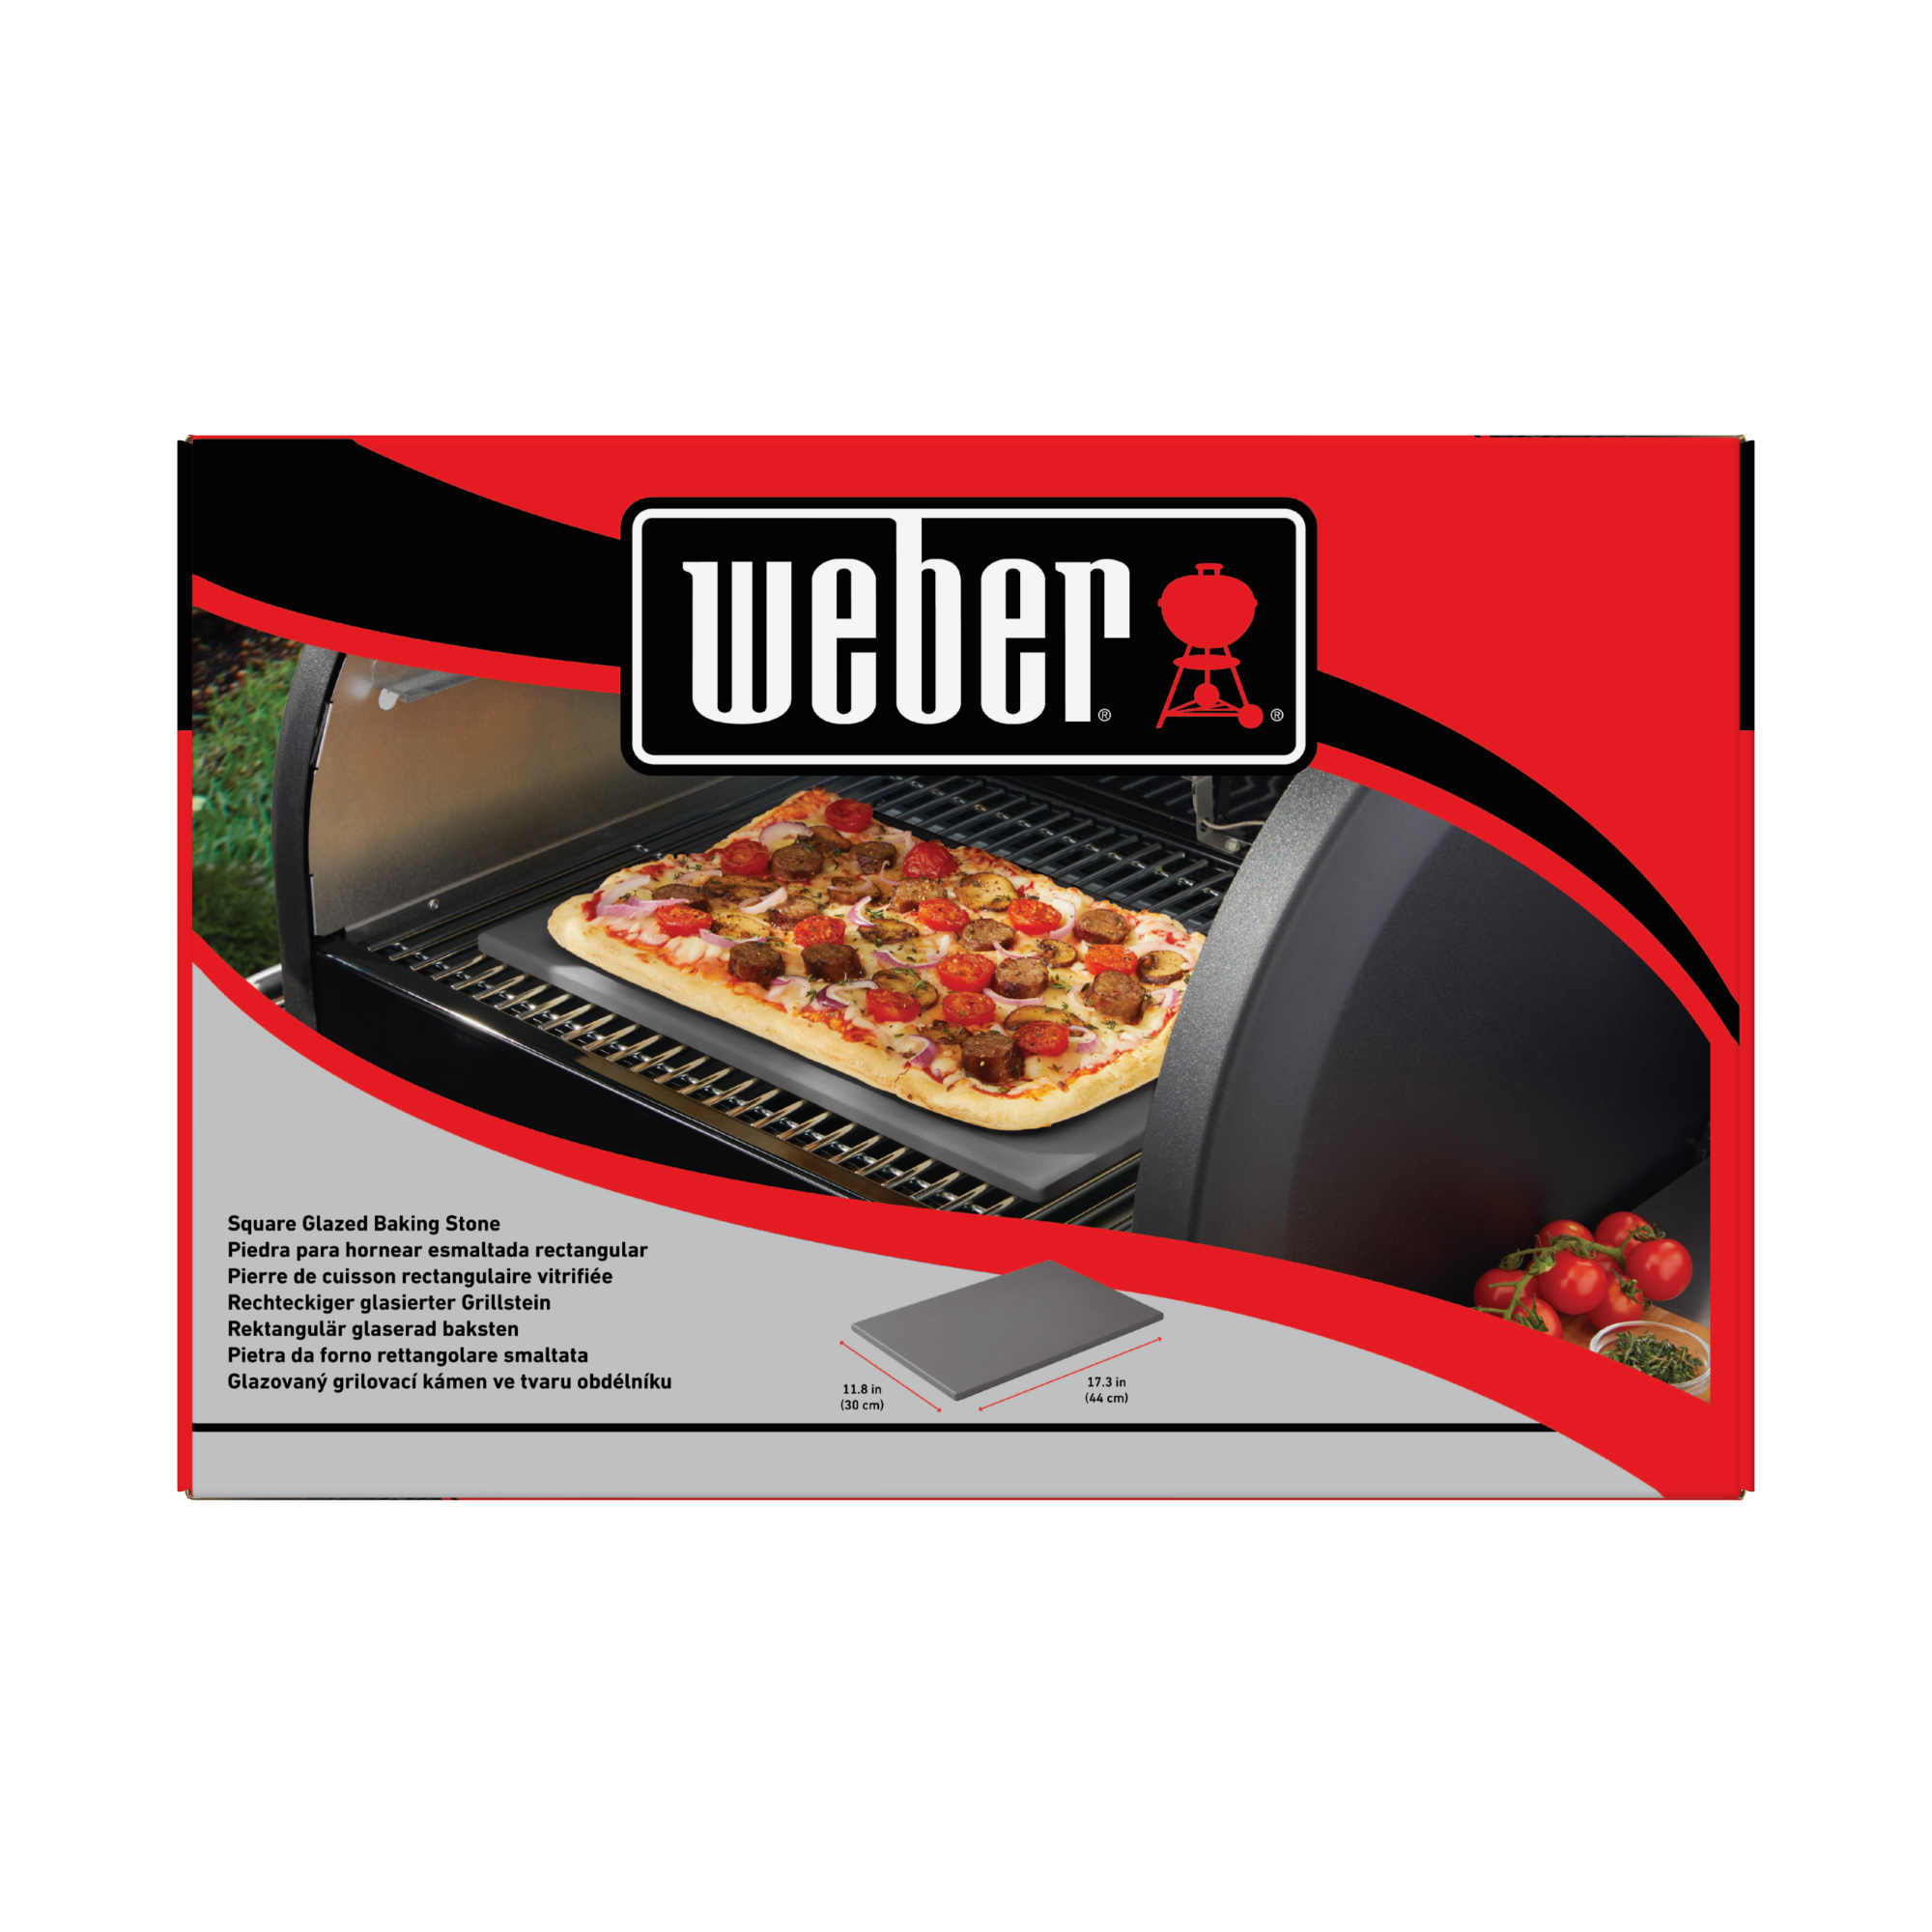 Glasierter Pizzastein Cordierit grau rechteckig 44 x 30 cm + product picture